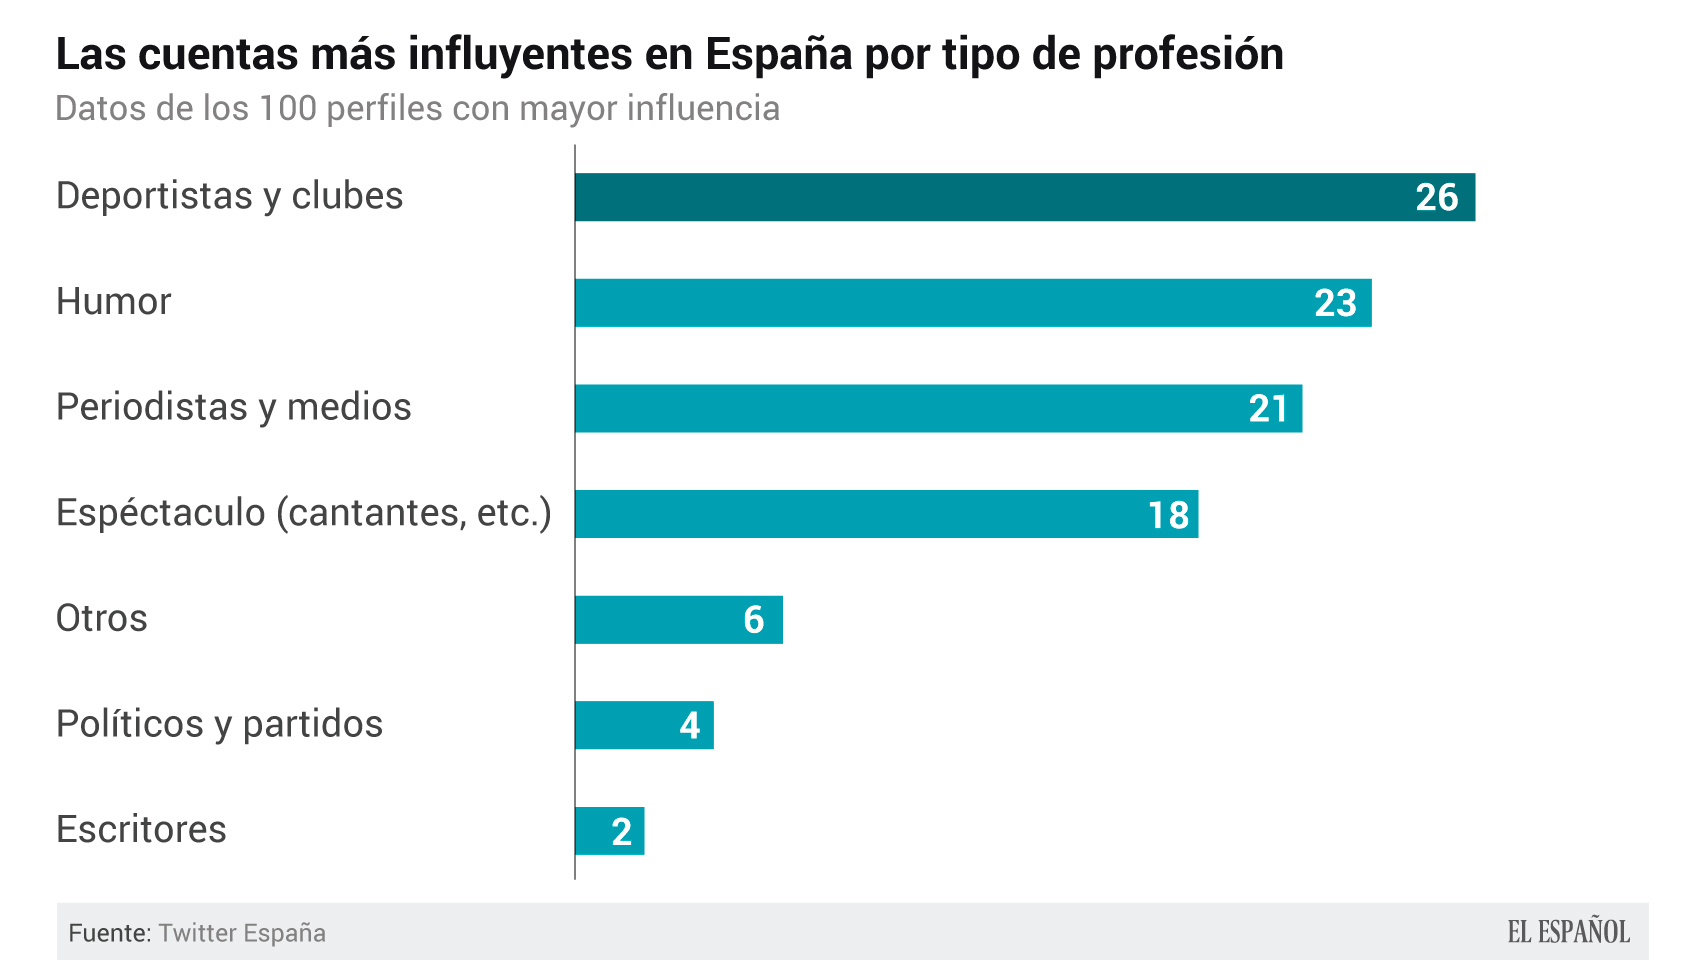 El top de influyentes, por tipo de profesión en España.